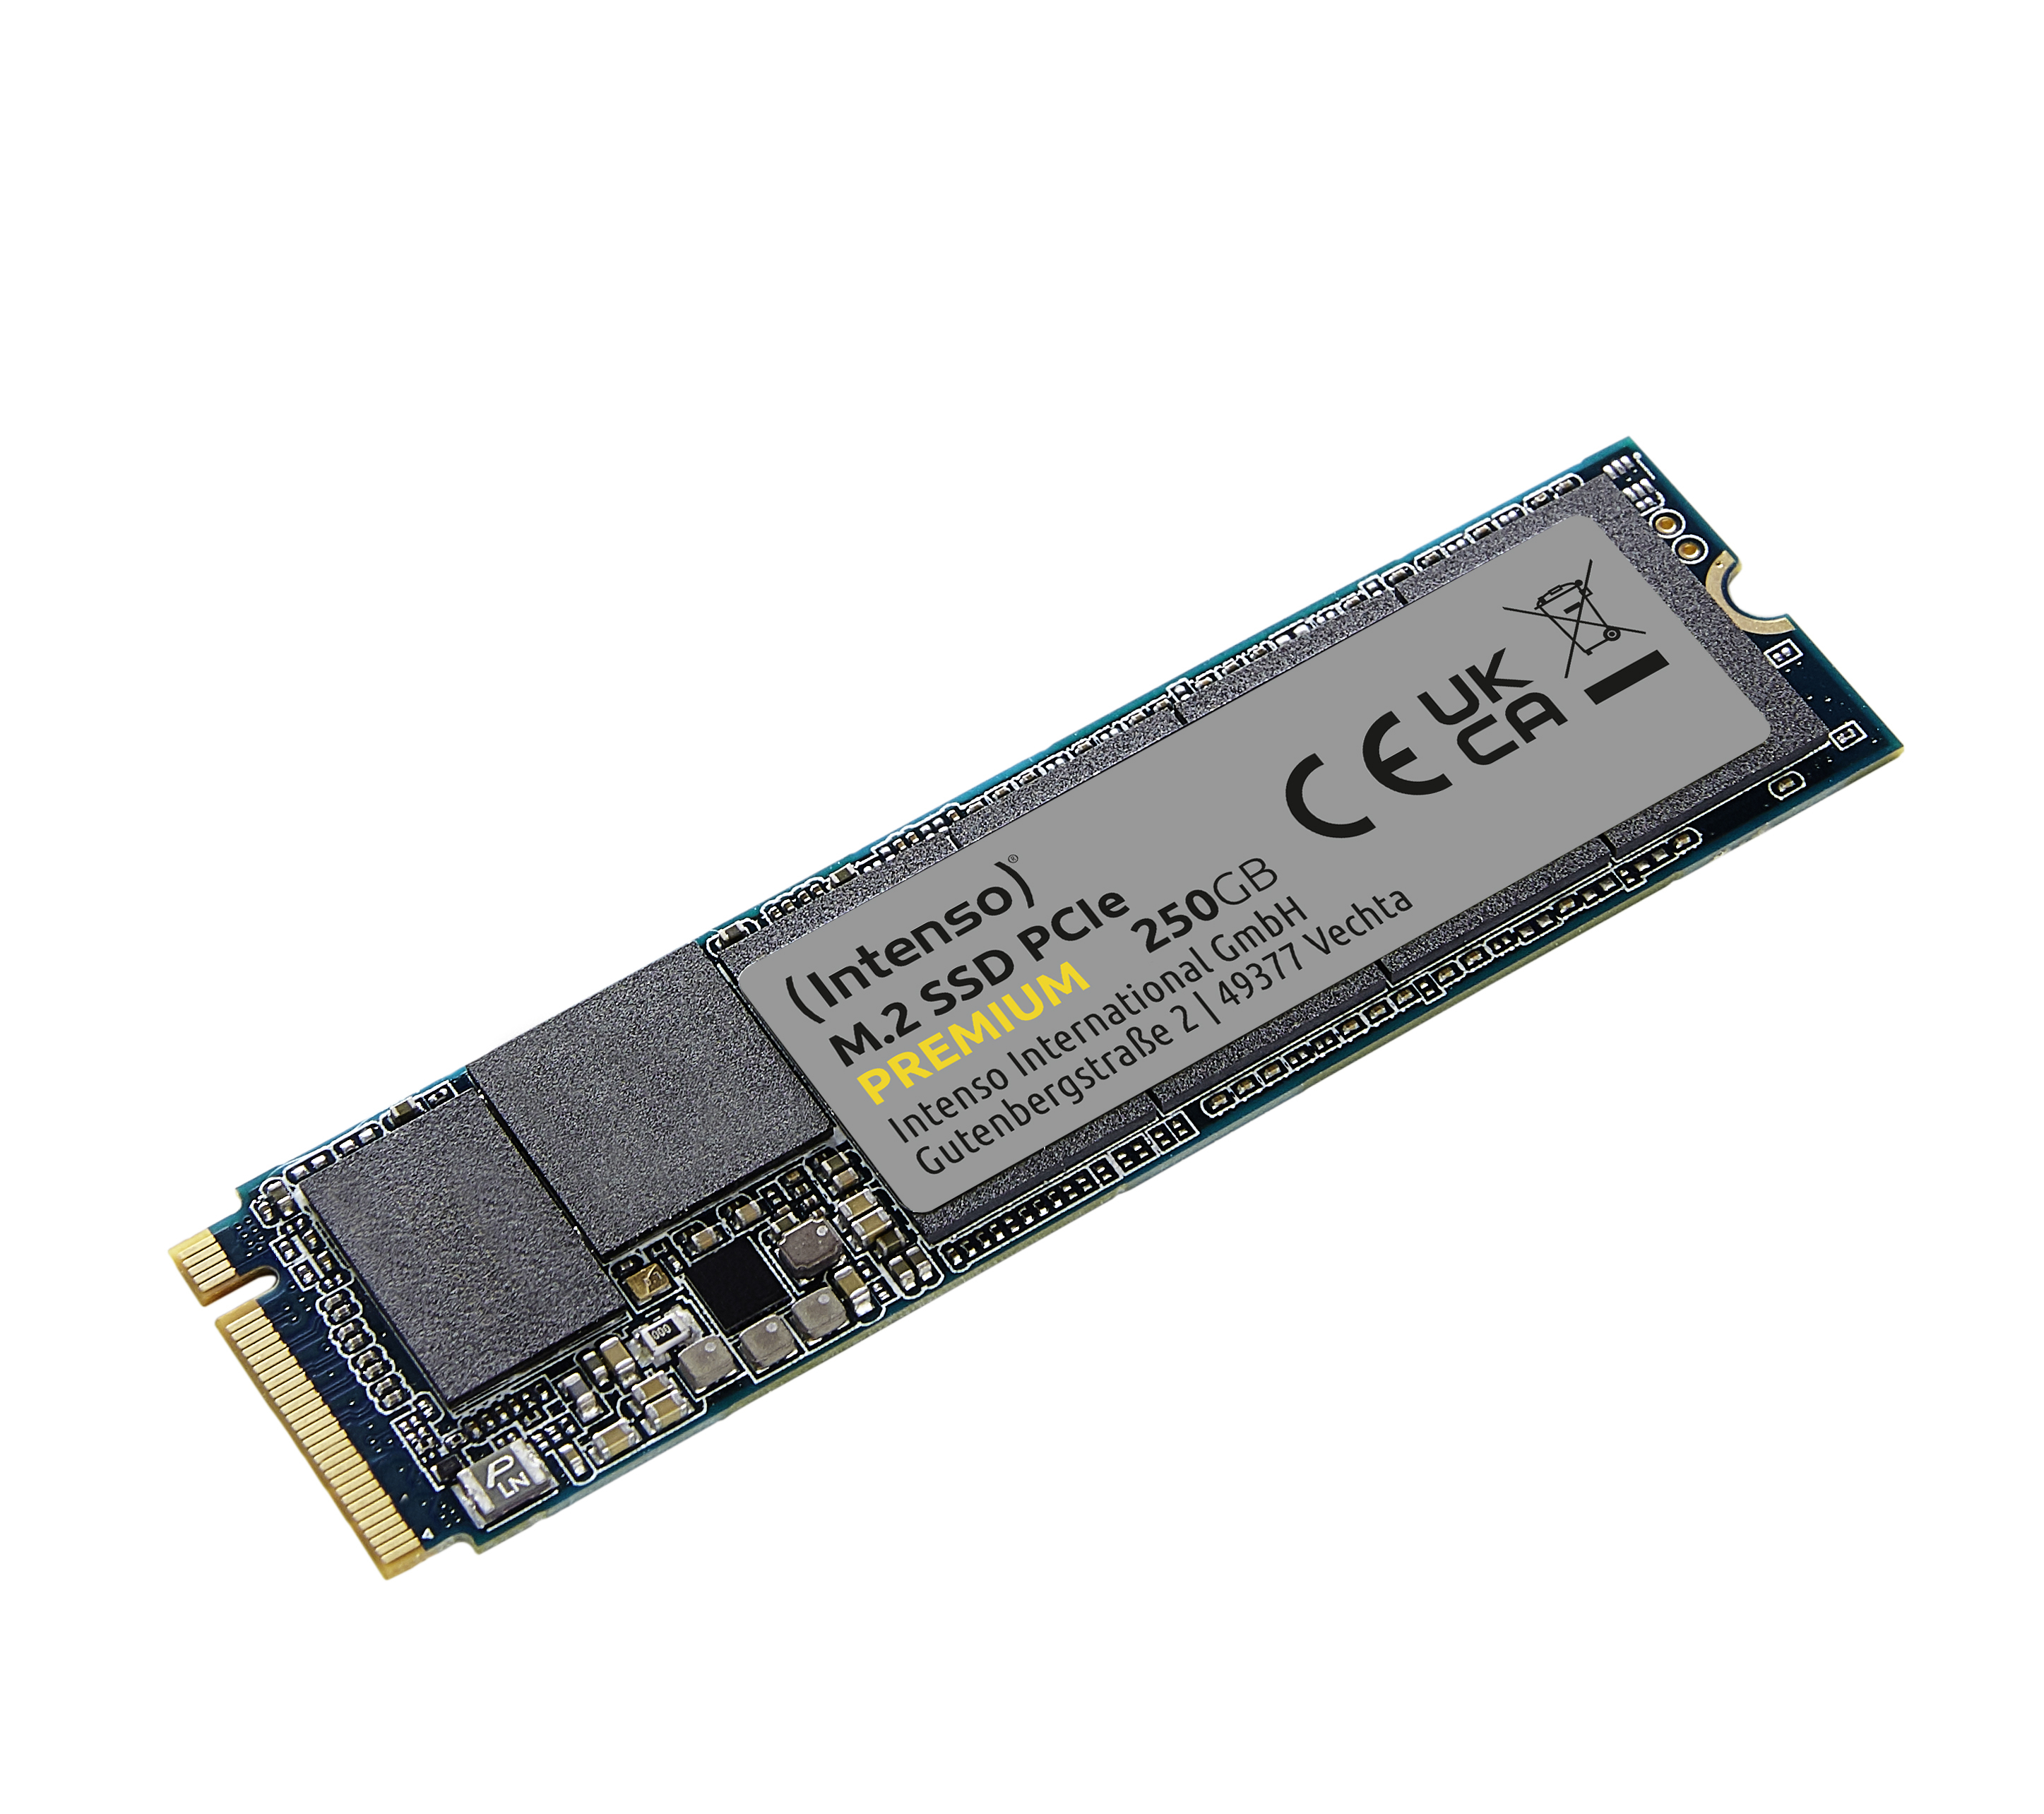 Intenso M.2 SSD PCIe Premium 250GB Gen.3x4 NVME 1.3 retail